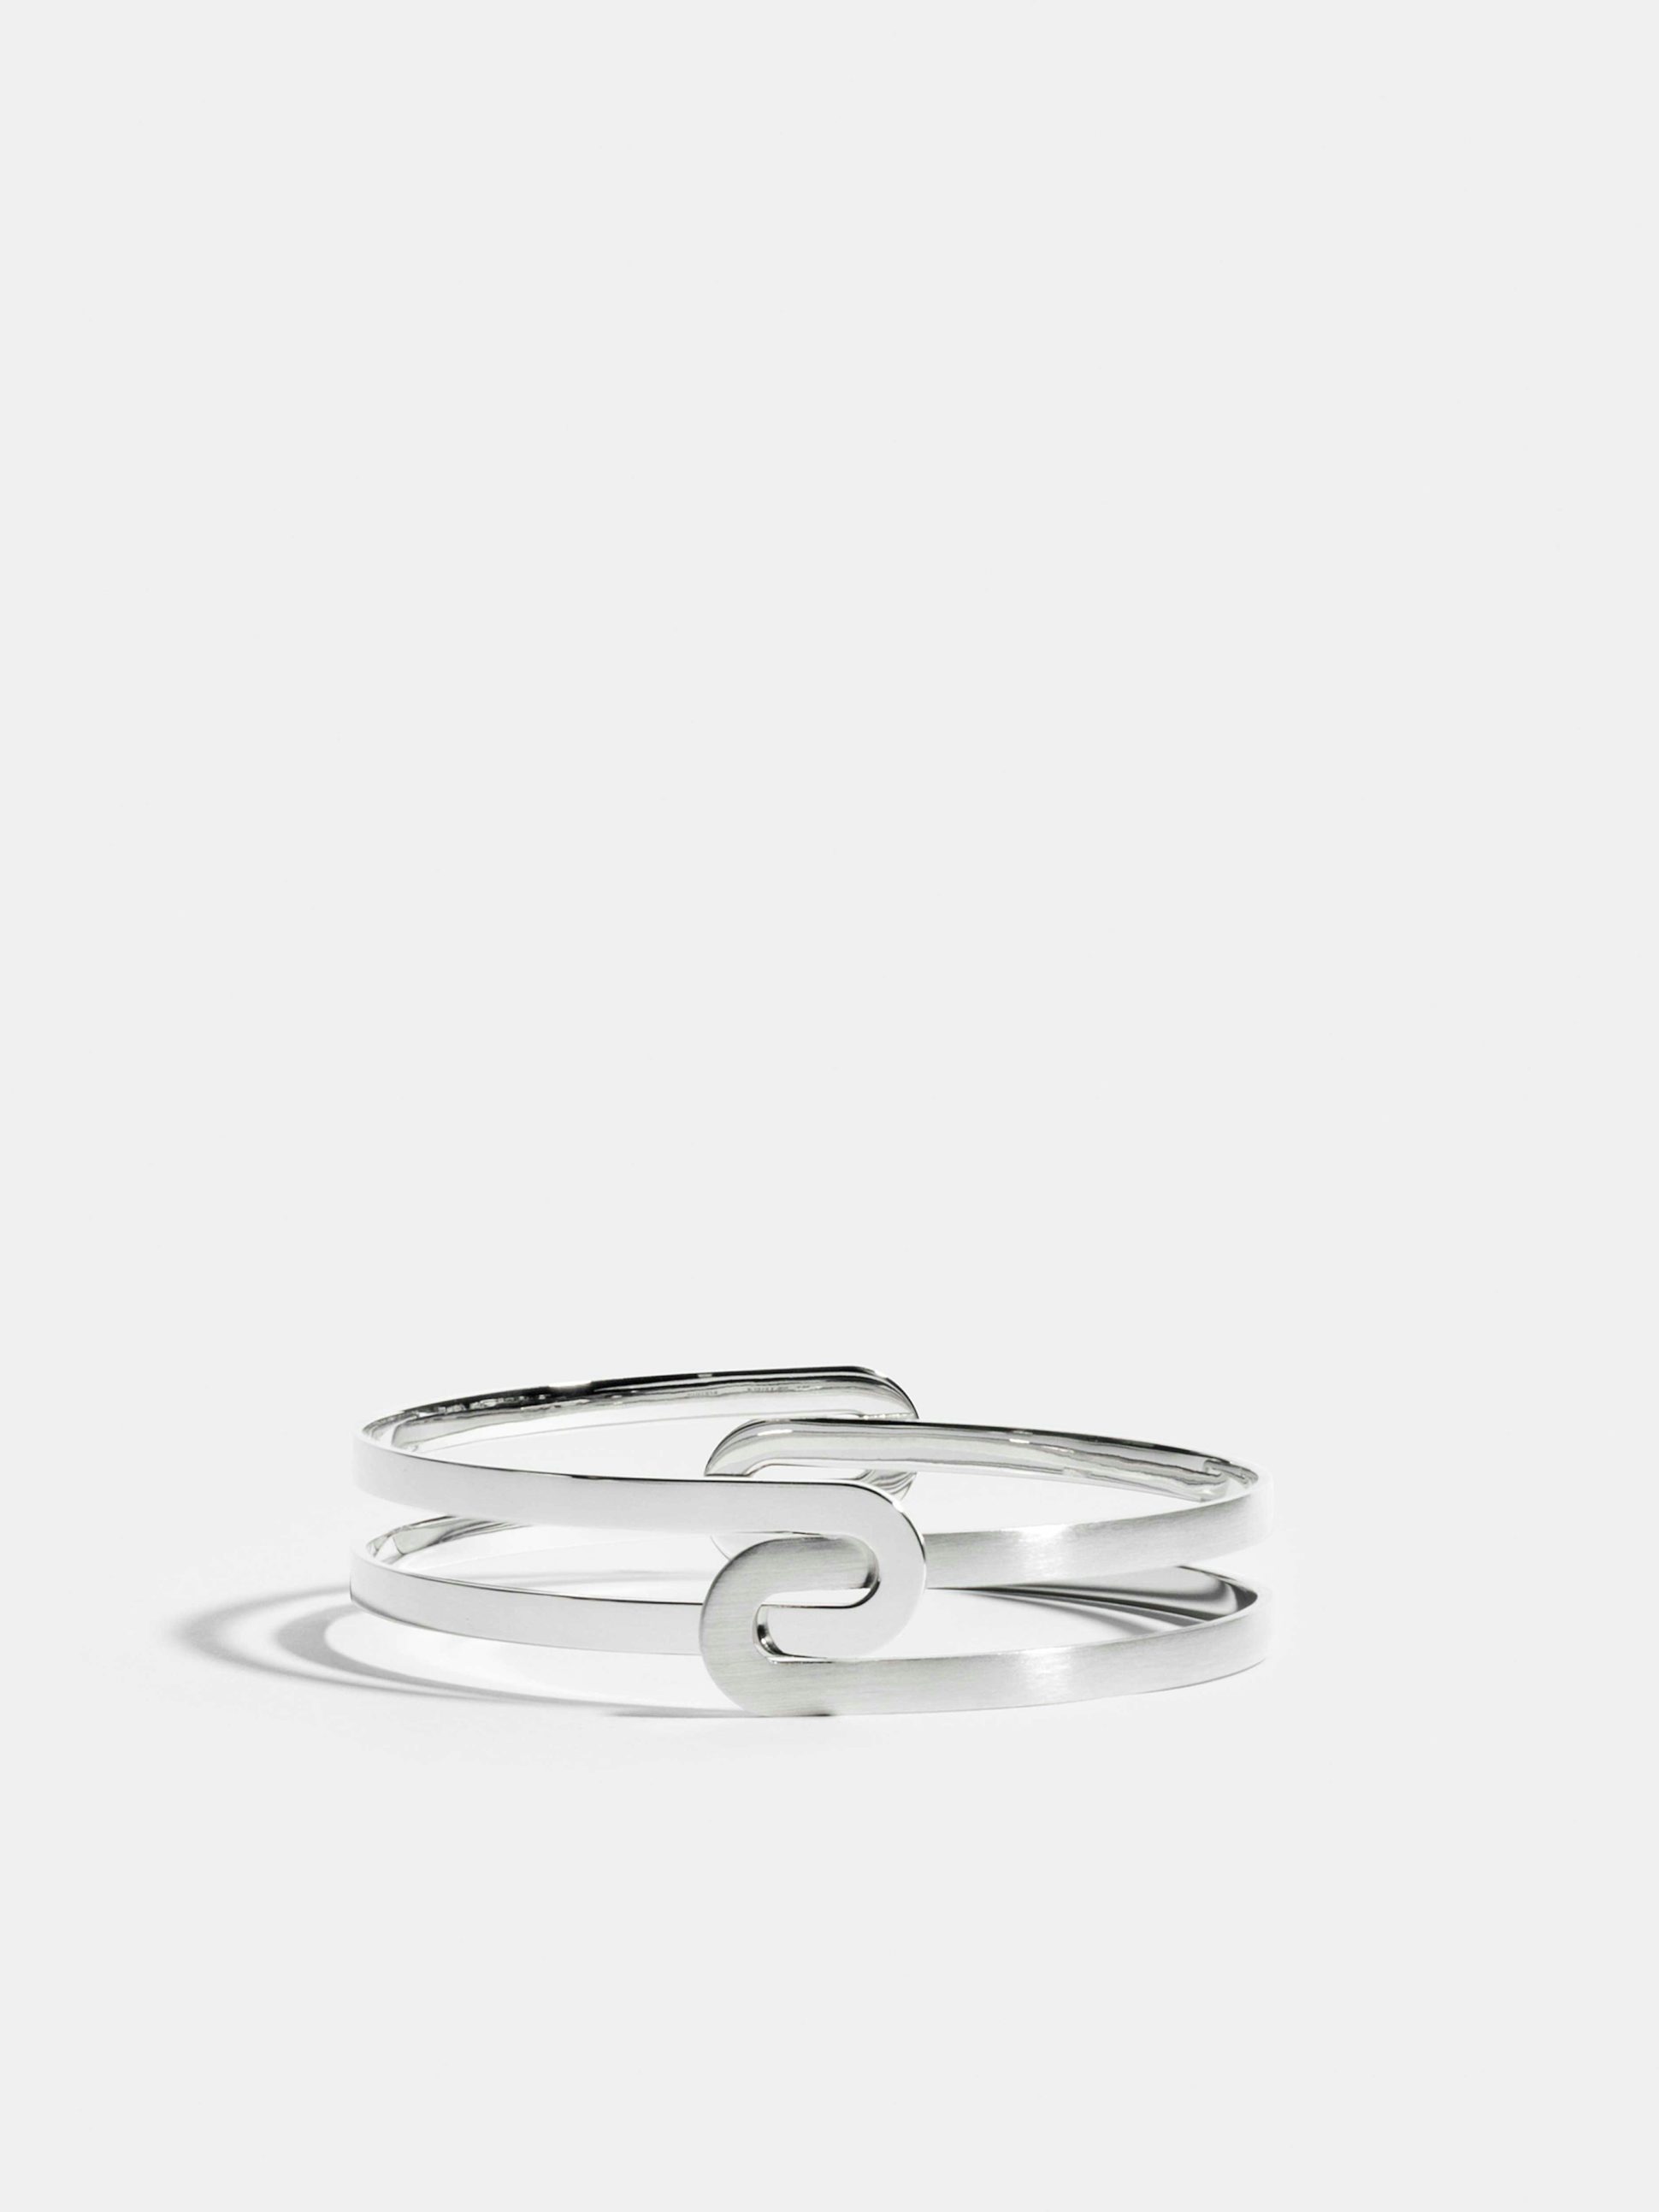 Bracelet Étreintes en Or blanc éthique 18 carats certifié Fairmined composé d'un demi-bracelet simple finition poli-brillant et d'un demi-bracelet simple finition brossée.